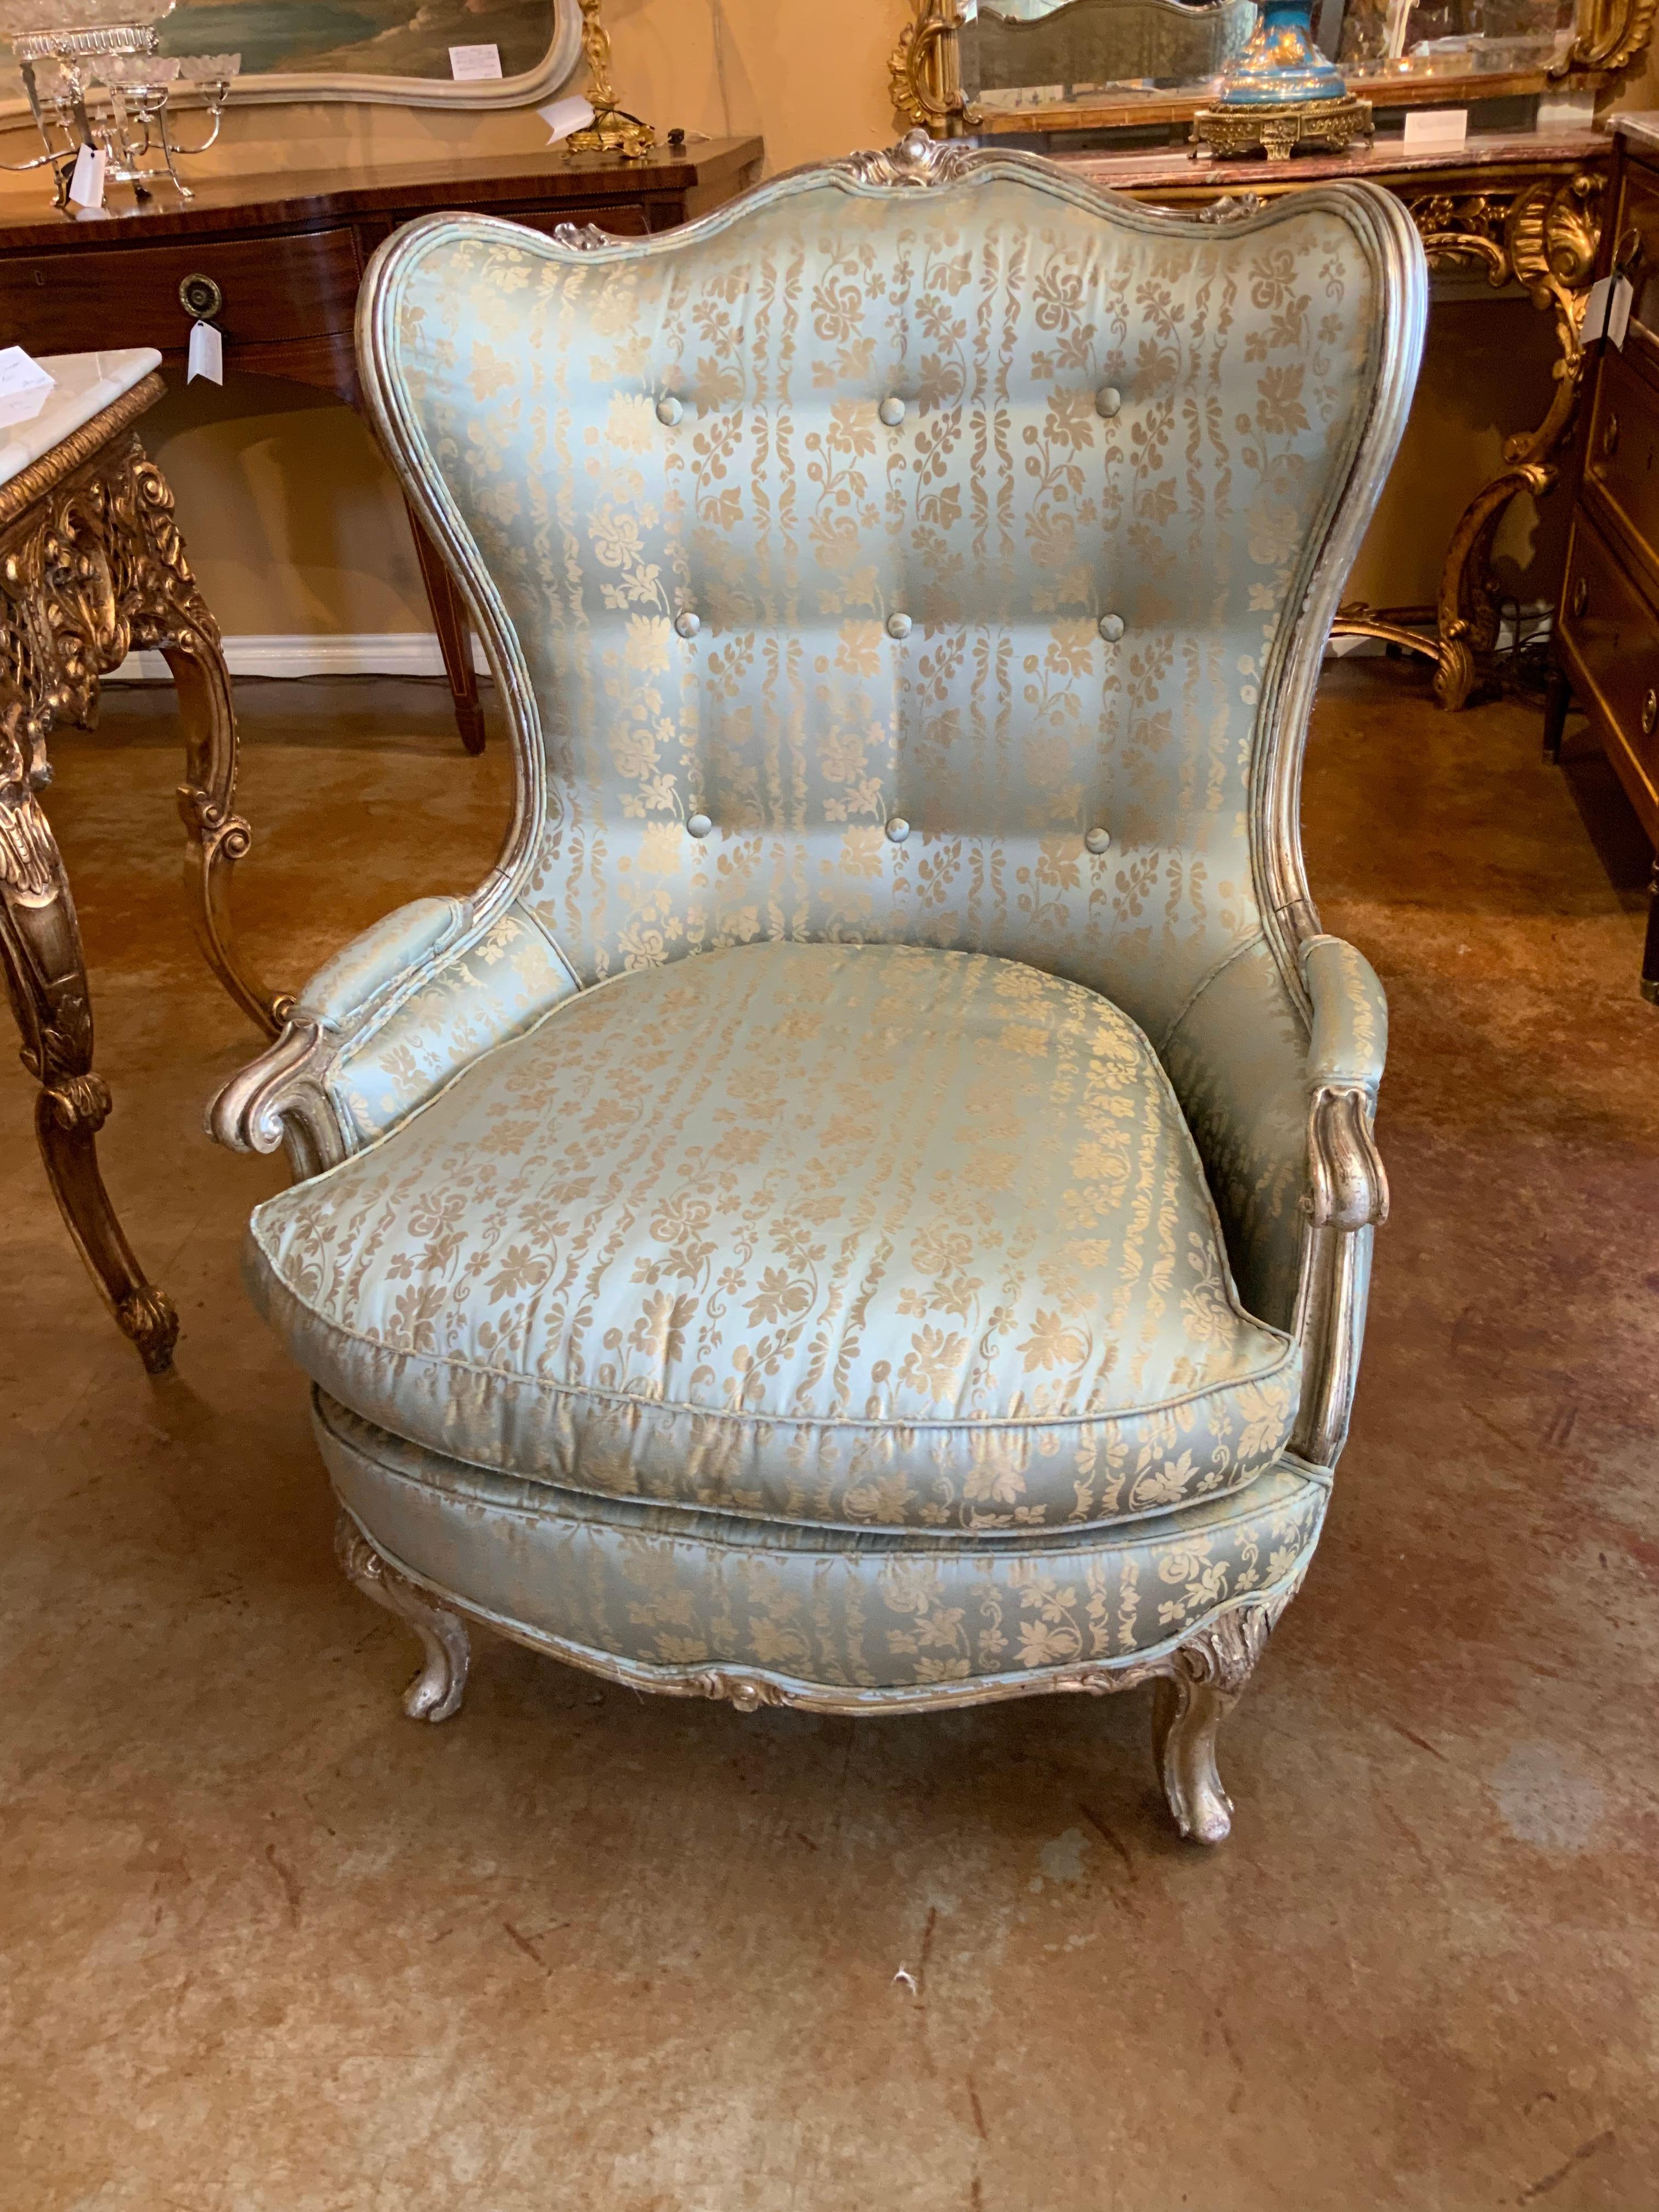 Große silbervergoldete Bergere-Stuhlrahmen im Louis XV-Stil mit Cabriole-Beinen
Kartusche in der Mitte des Wappens. Gepolstert mit einem hübschen aqua- und cremefarbenen Seidenmuster
Stoff ohne Flecken und Makel.